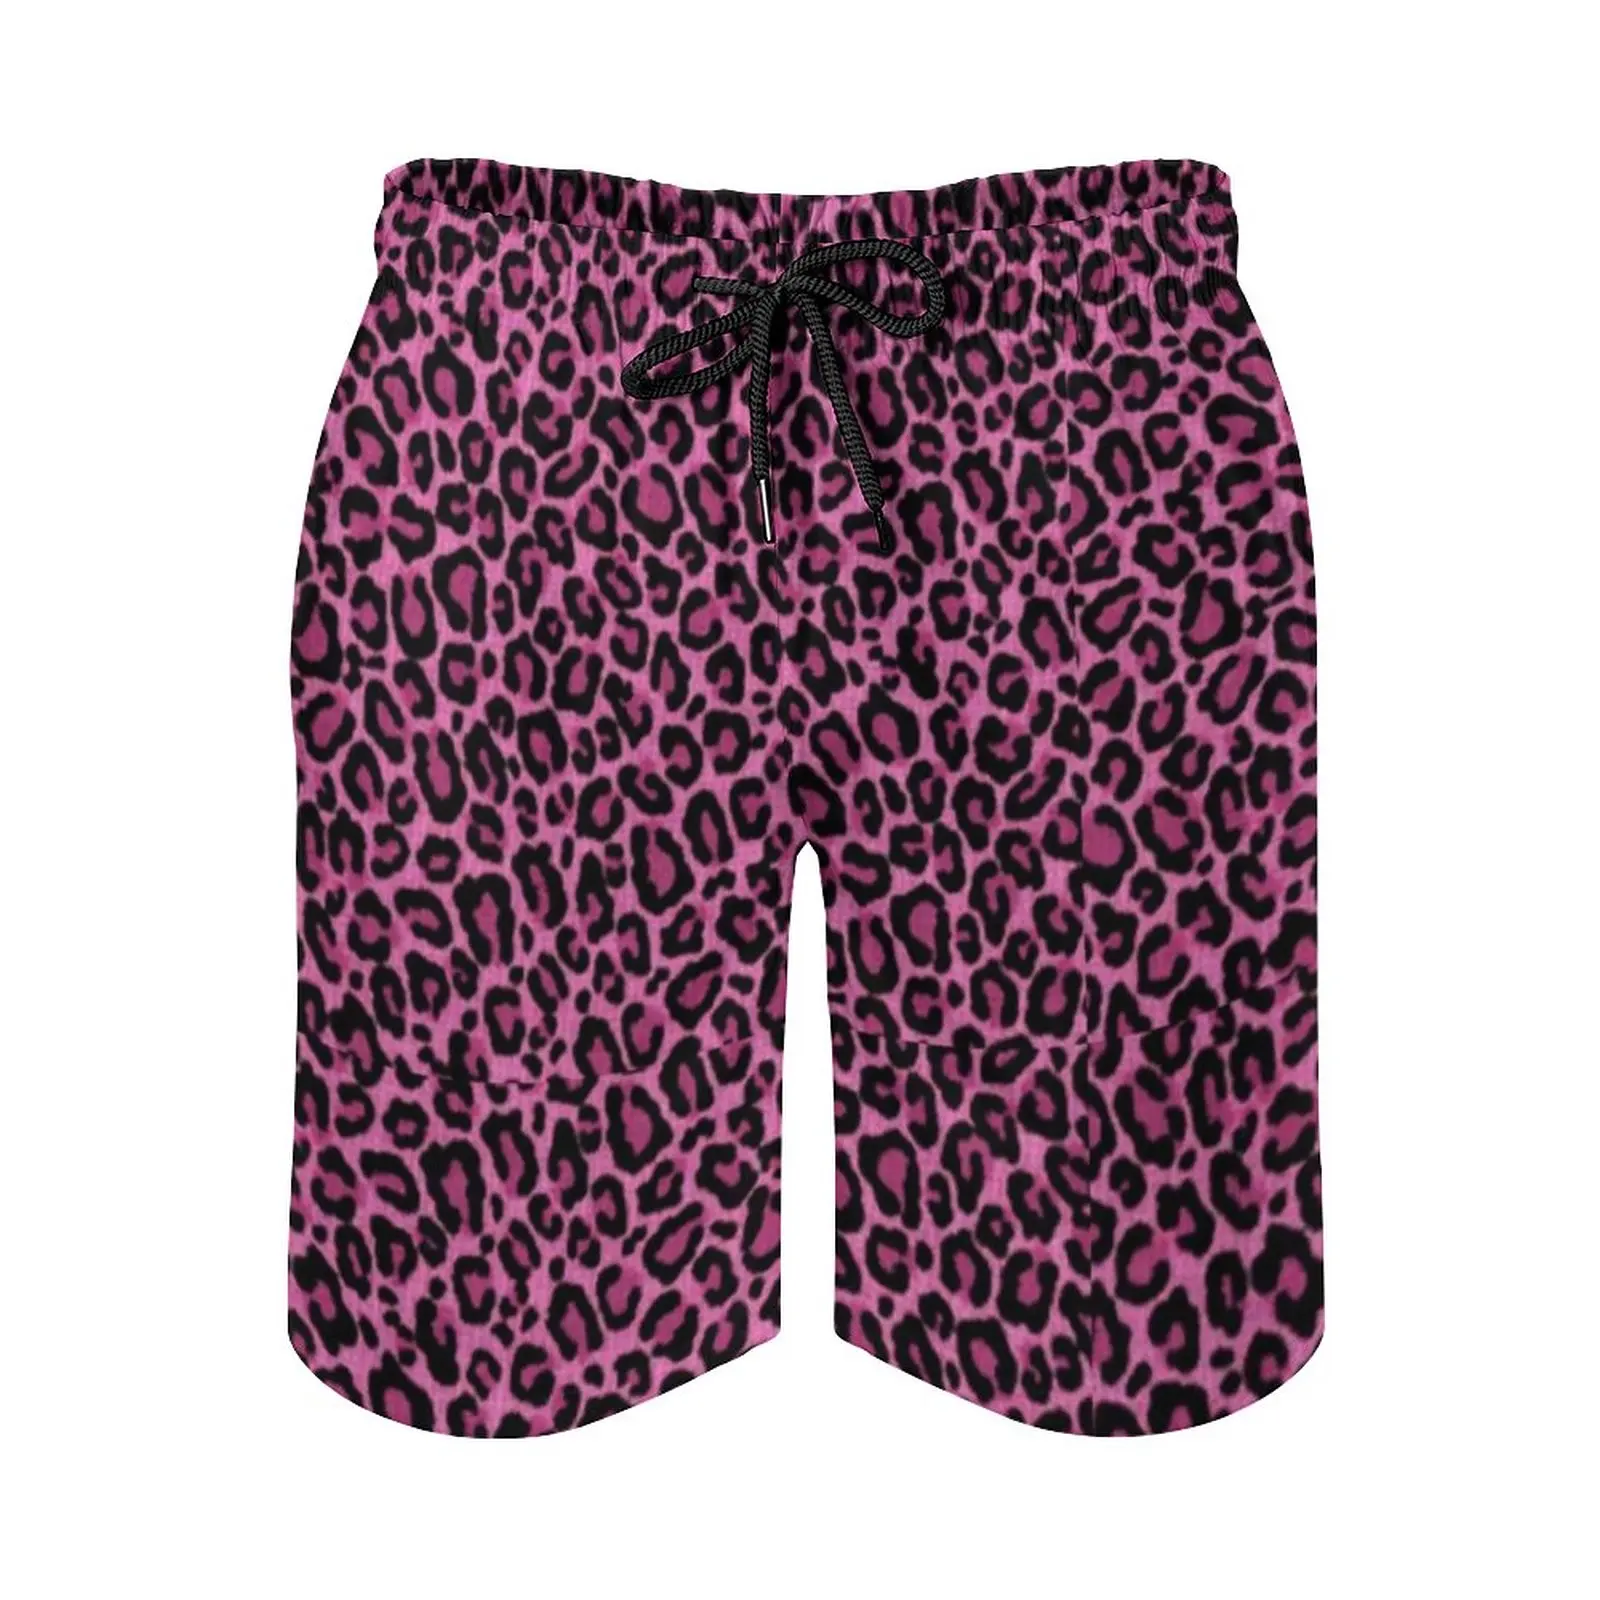 Funky leopard print board shorts de alta qualidade rosa preto